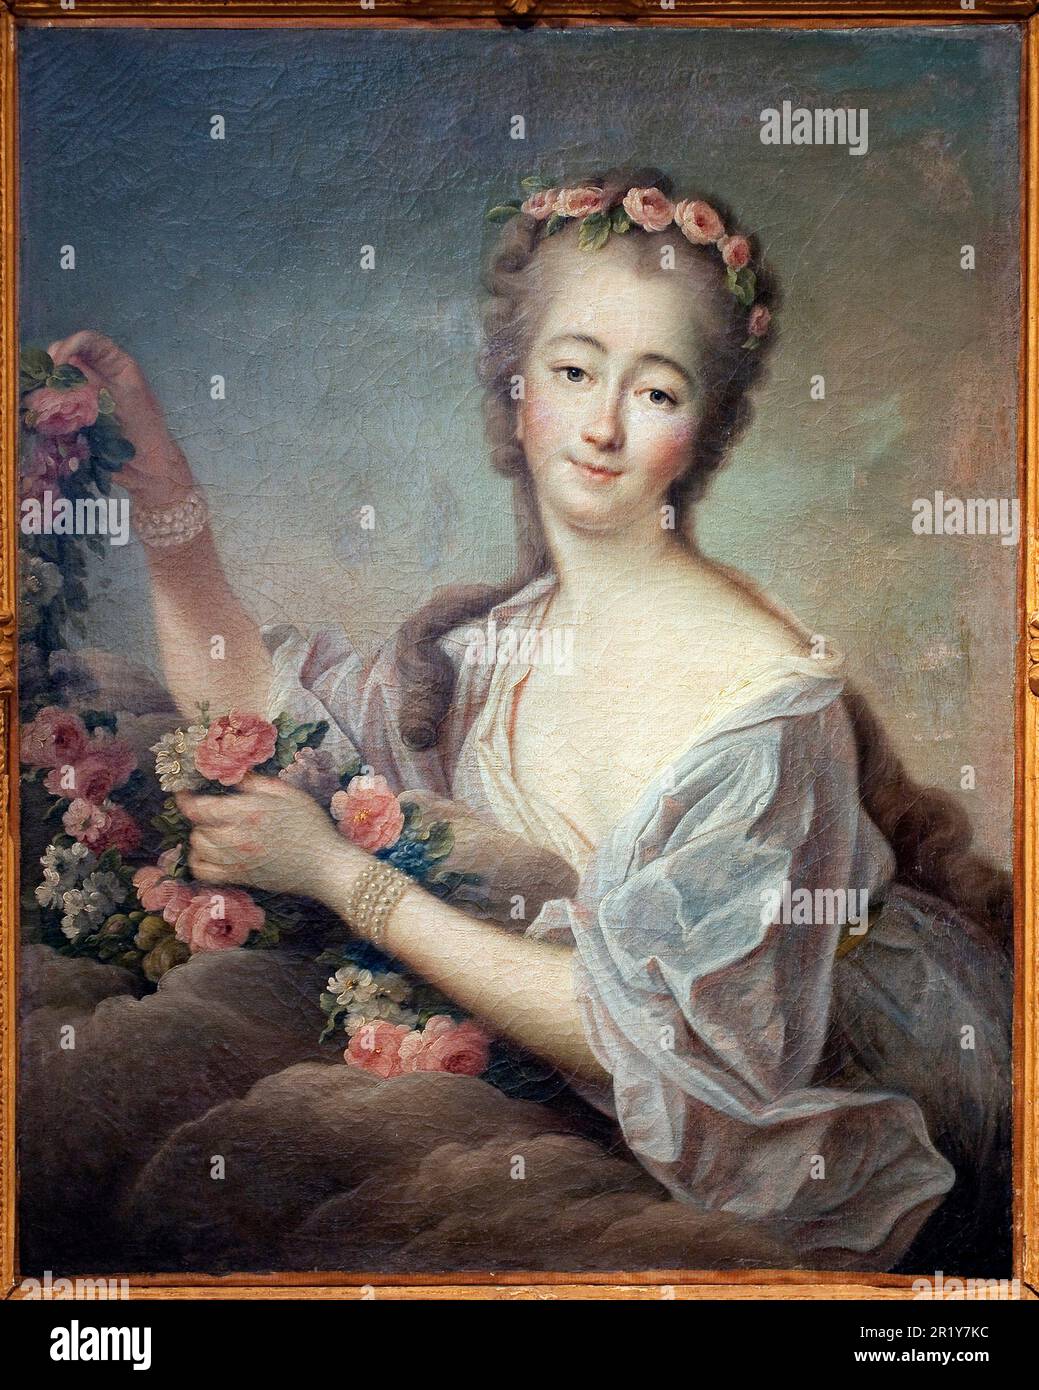 Portrait de Madame du Barry en Flore (Jeanne Becu, comtesse (ou madame) du Barry (1743-1793) - Peinture de Francois Hubert Drouais (1727-1775), huile sur toile, 1774 - Art francais 18e siecle - Musee des Beaux Arts d'Agen Stock Photo